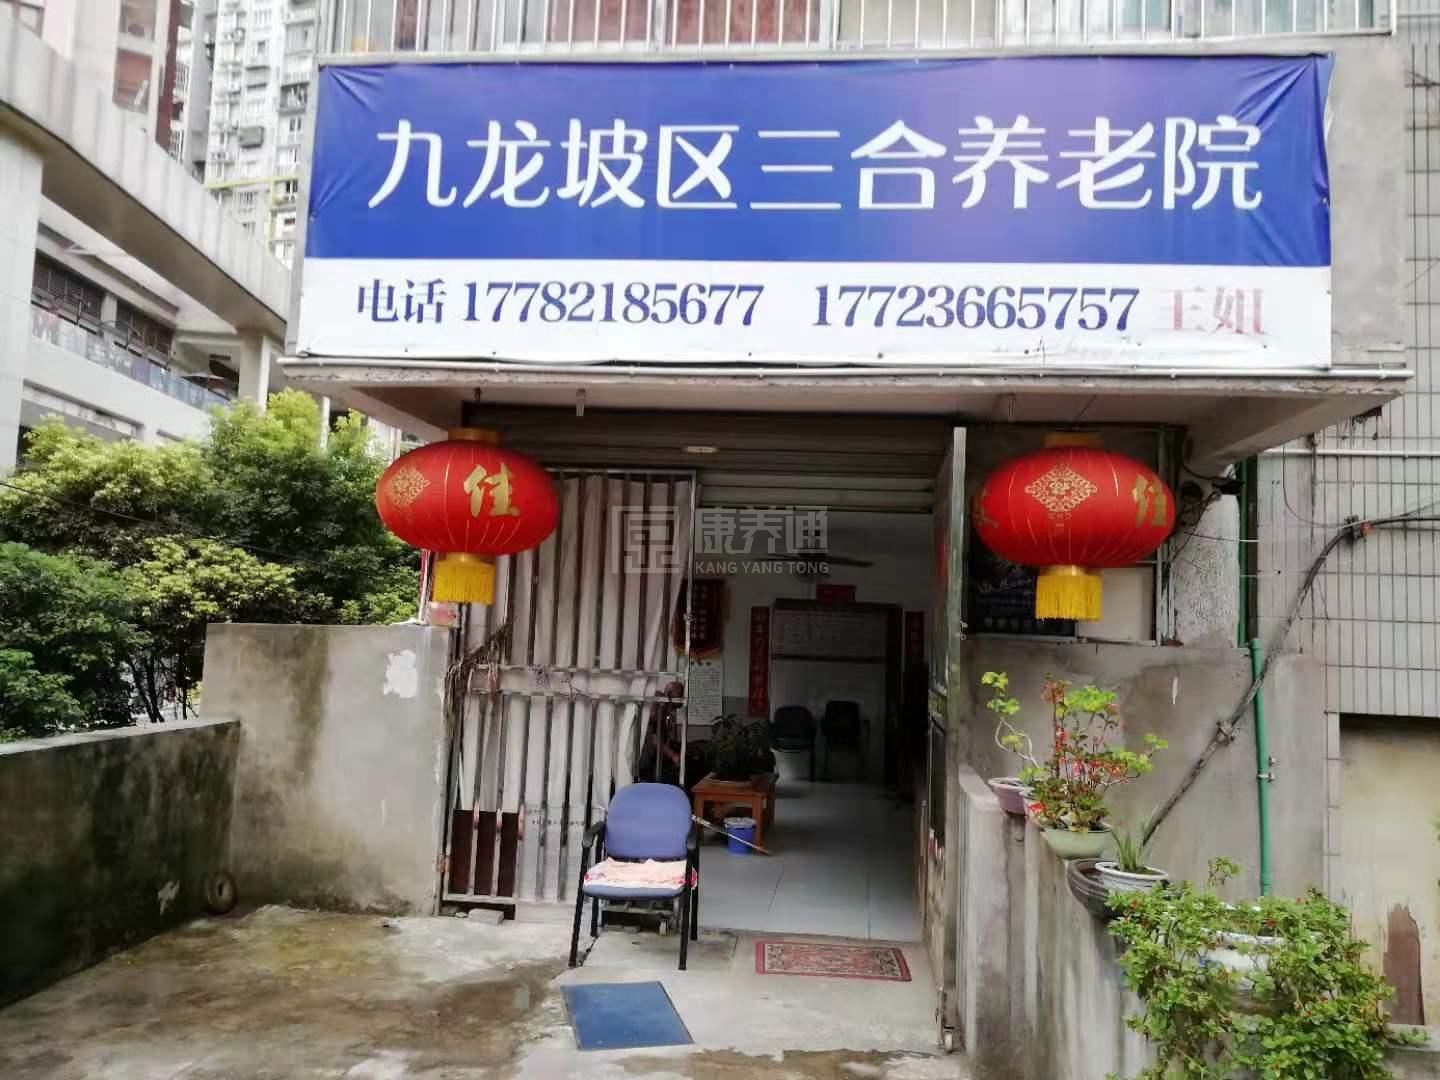 重庆市九龙坡区三合养老院服务项目图4让长者主动而自立地生活